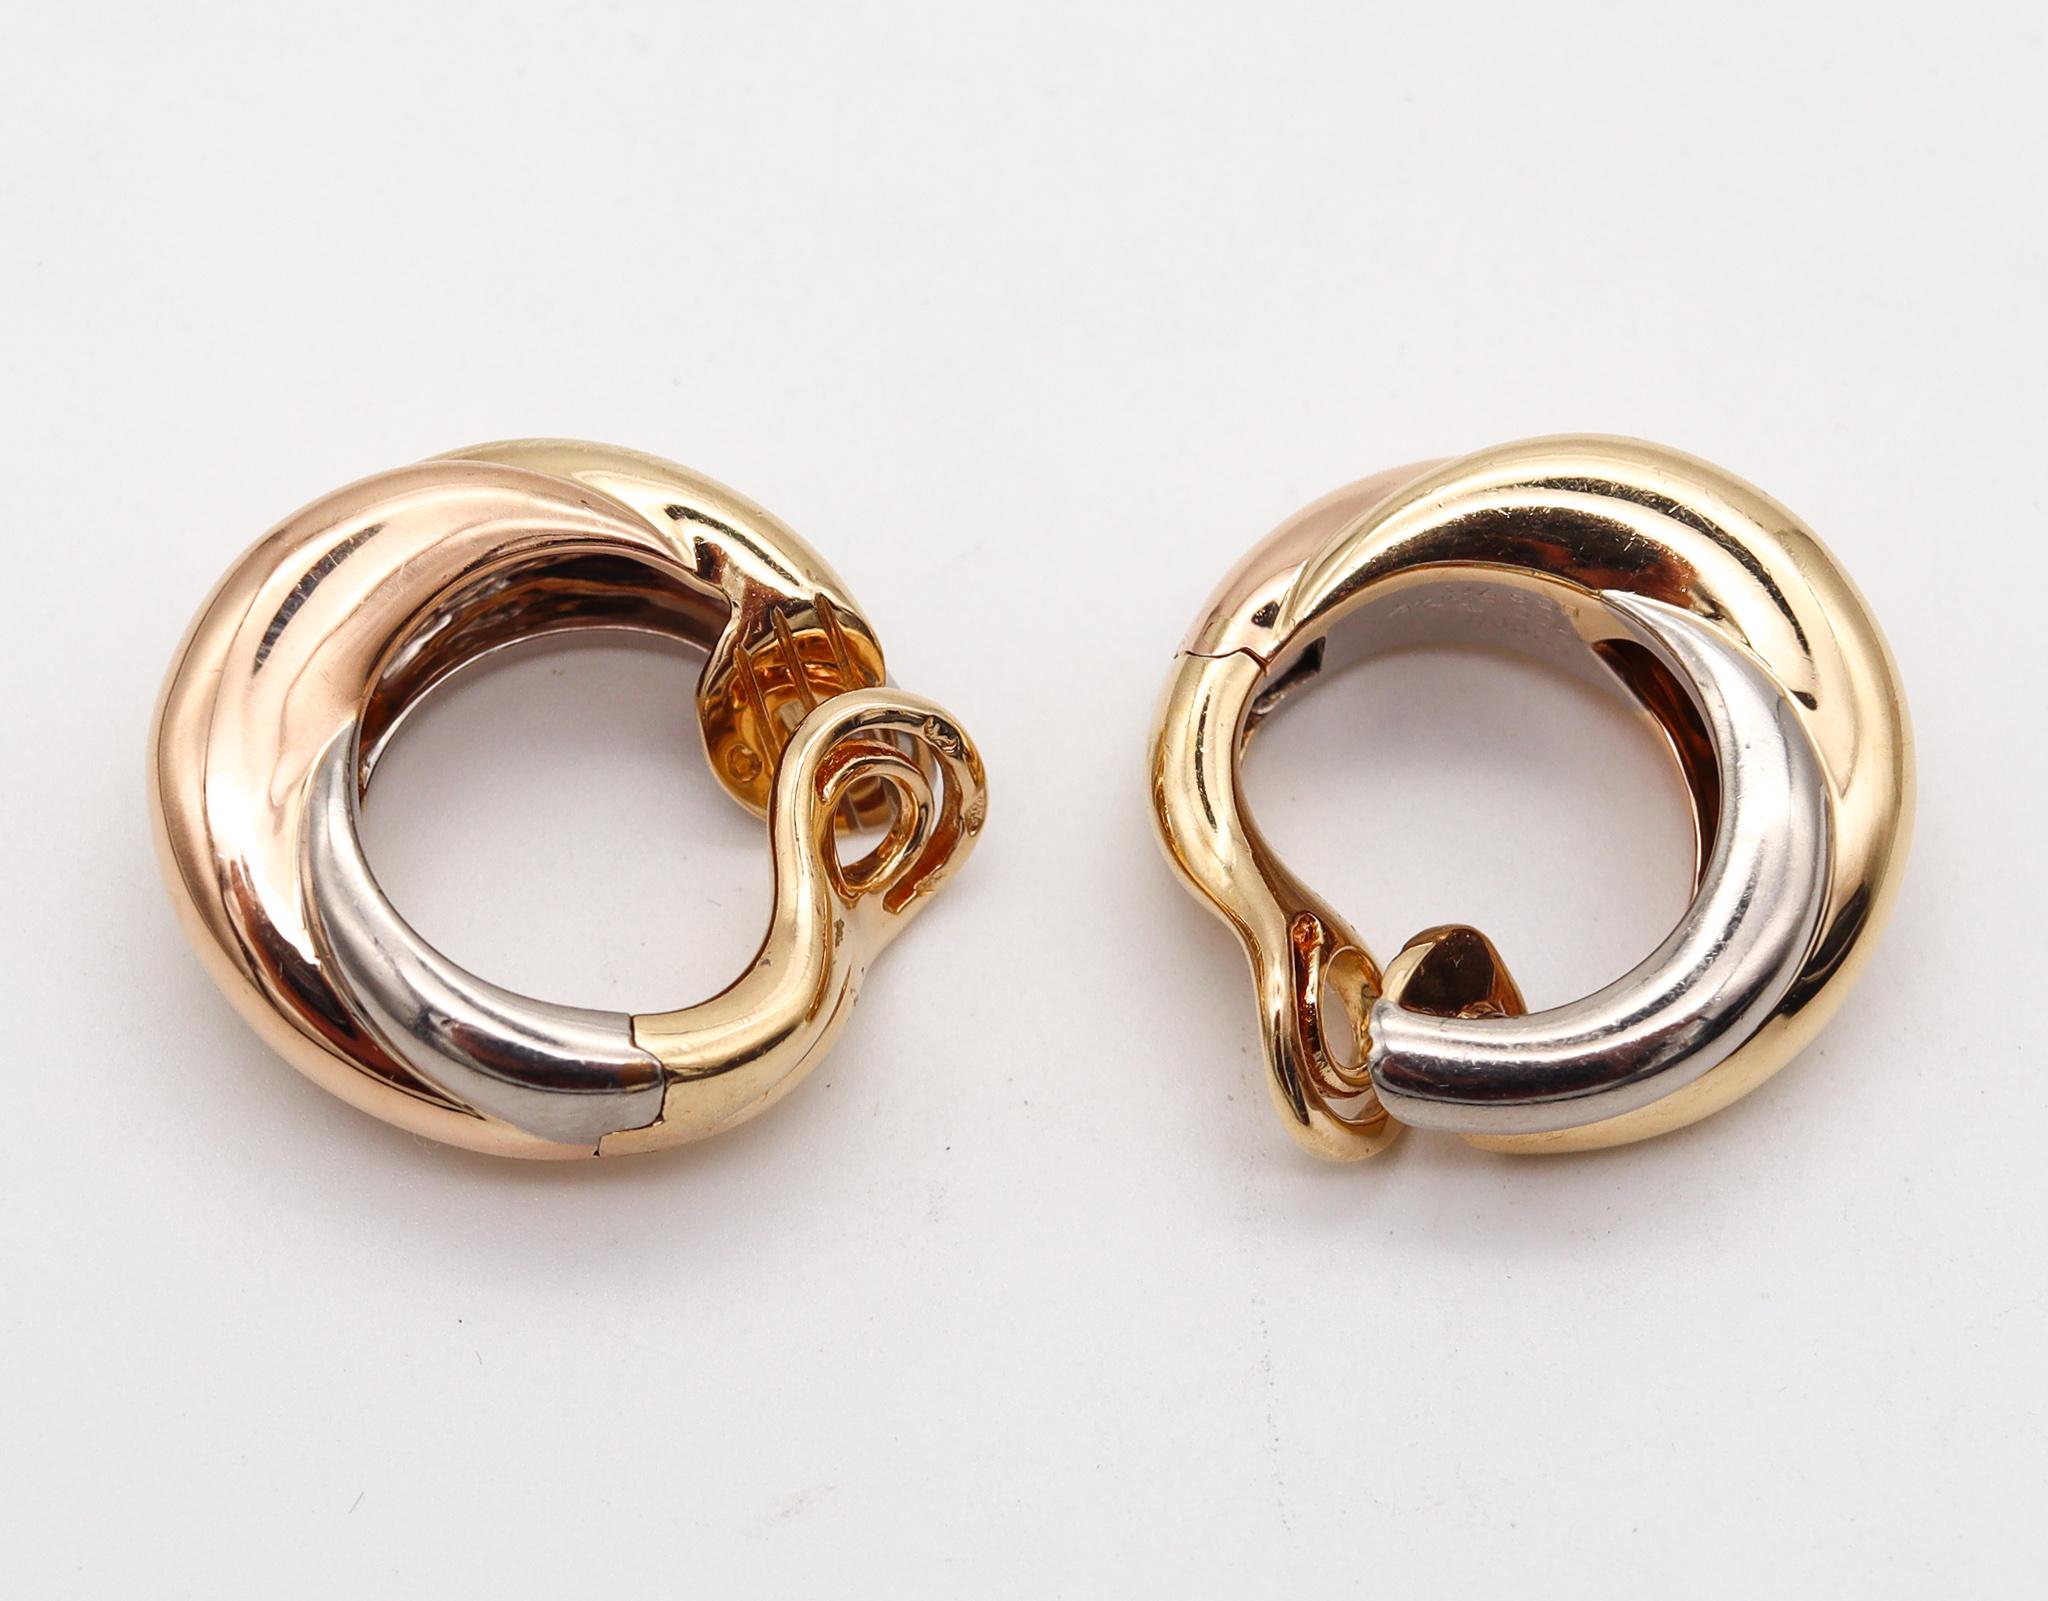 Die kühnen Trinity-Ohrringe wurden von Cartier entworfen.

Diese Stücke sind eines der ikonischsten und bekanntesten Designs aus dem Schmuckhaus Cartier. Die großformatigen Ohrringe wurden in Paris (Frankreich) aus massivem Gelb-, Weiß- und Roségold